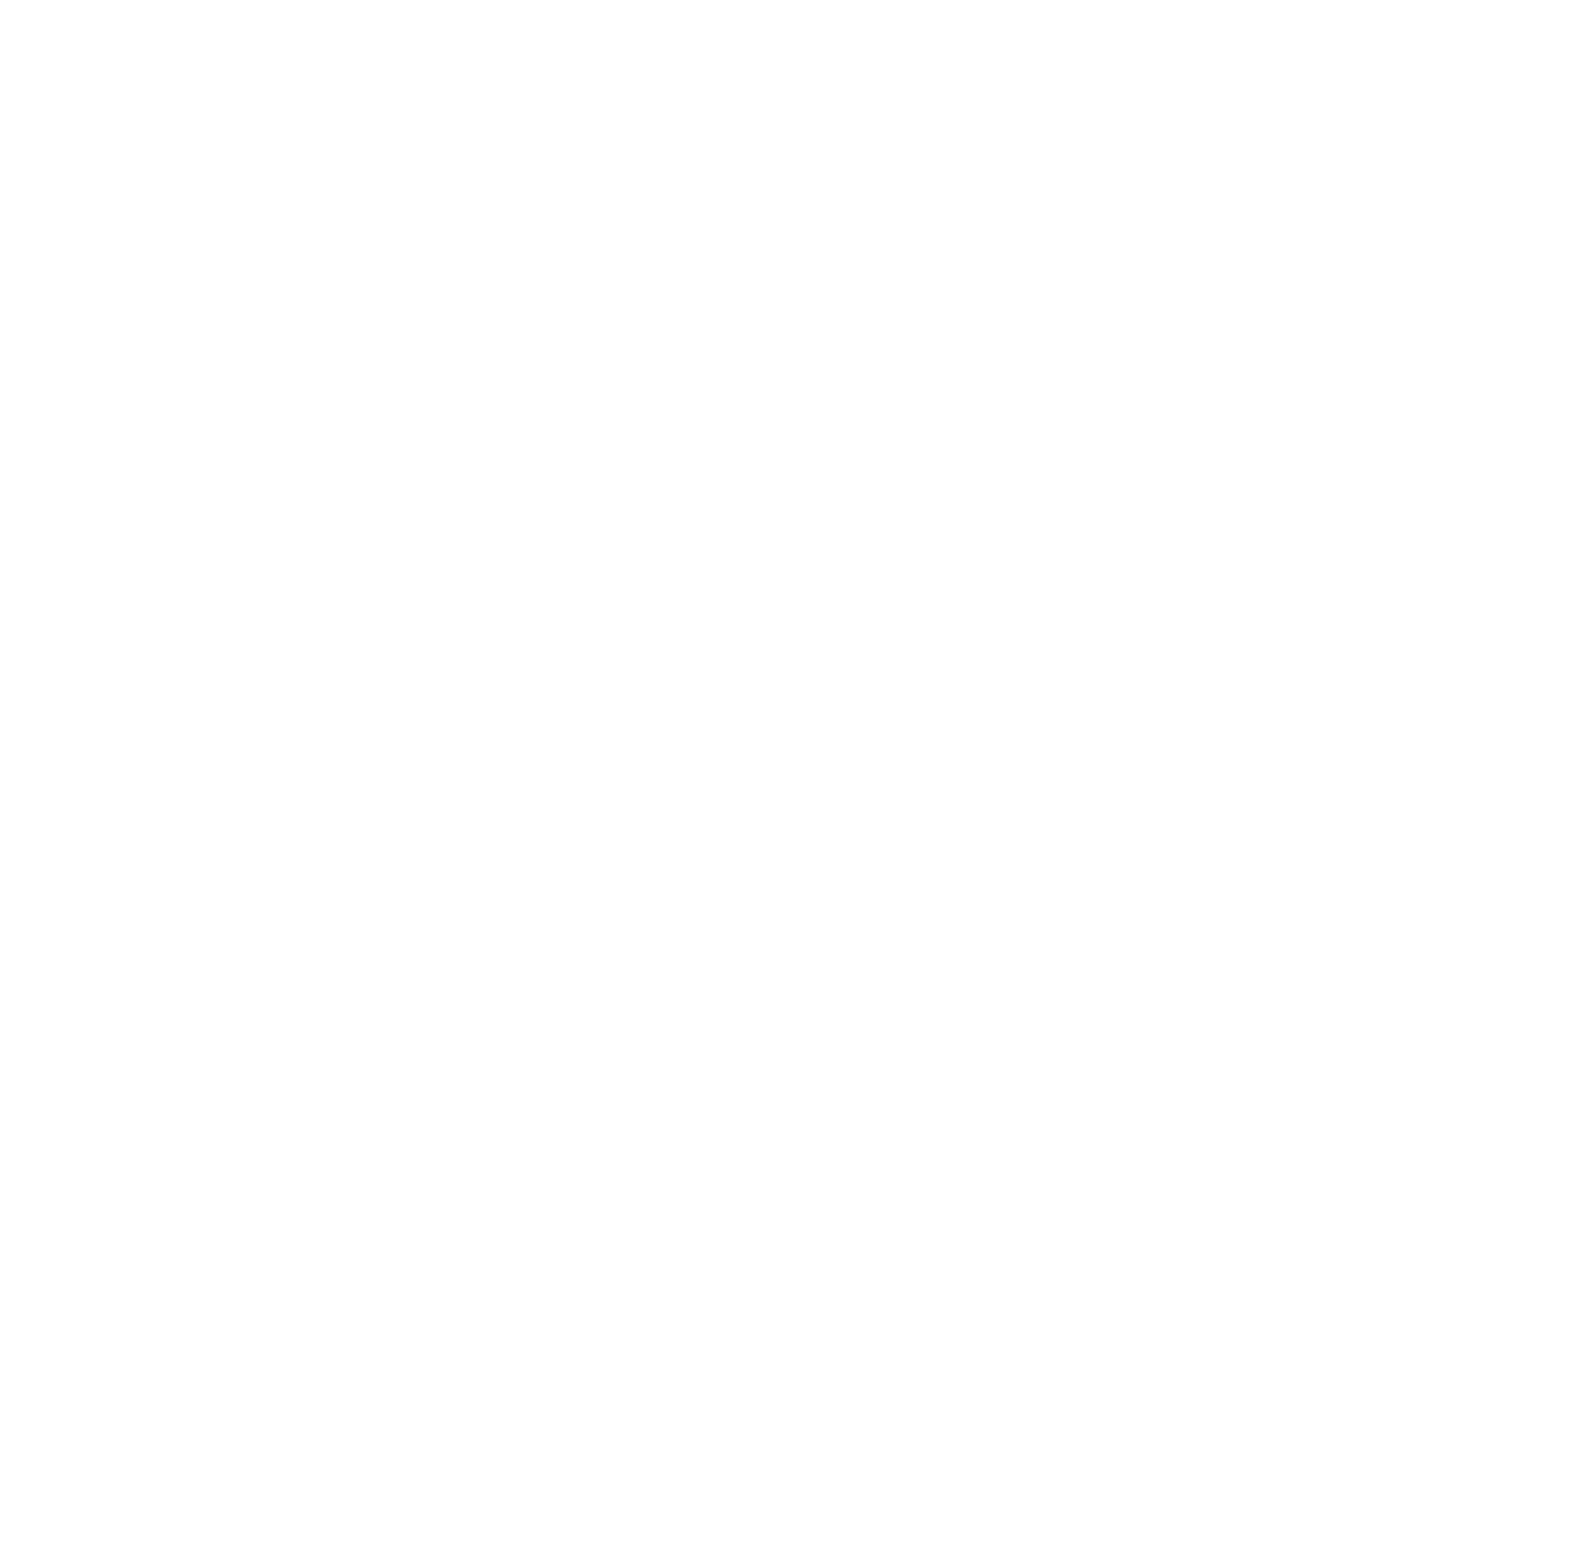 Unifi logo for dark backgrounds (transparent PNG)